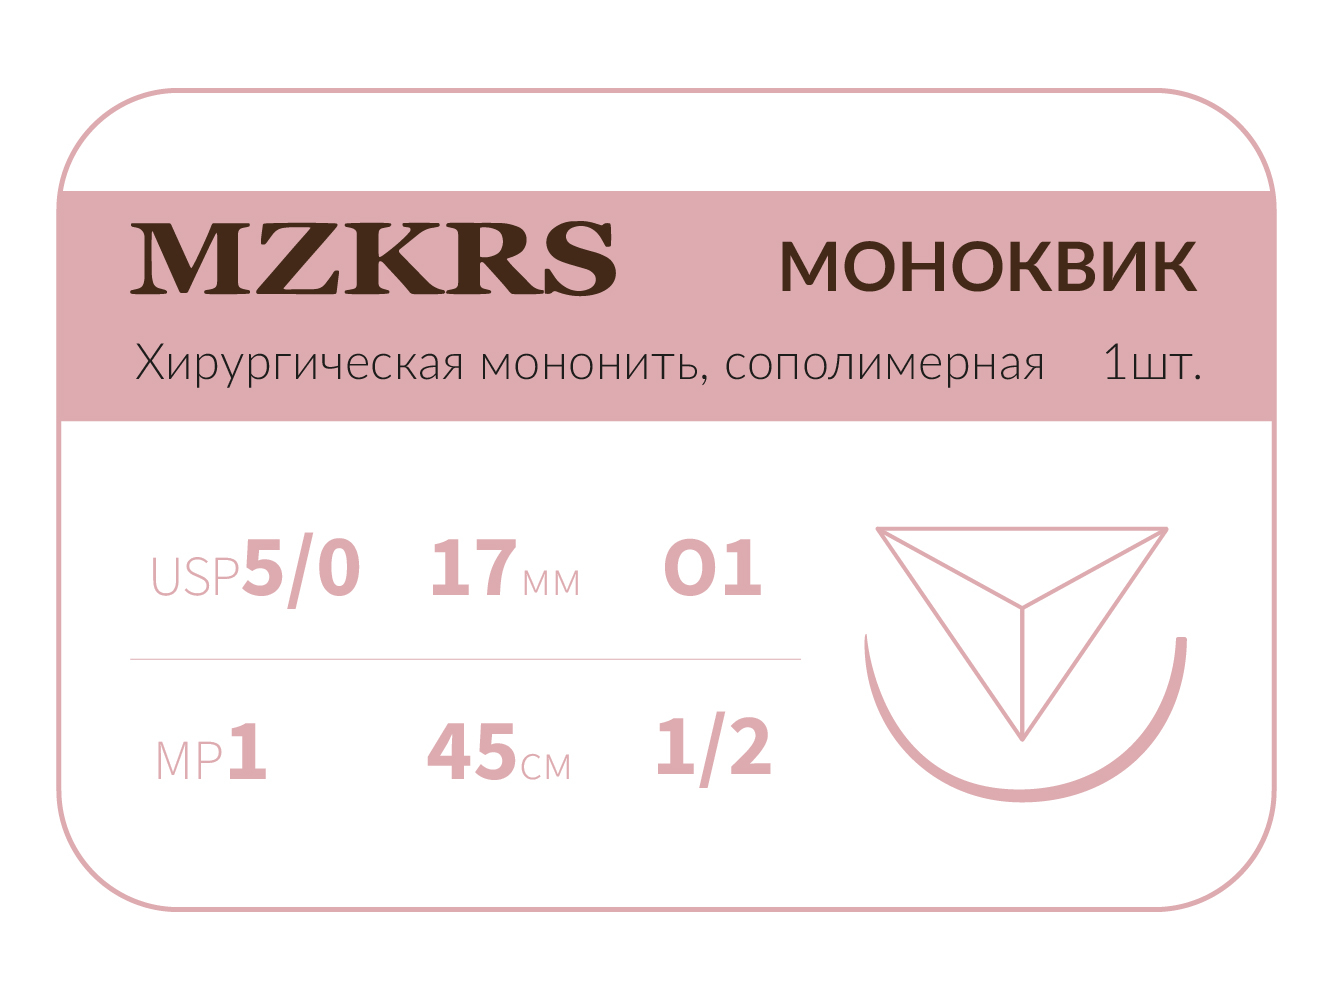 1712О1 Premium-5/0 (1)45 МОНК МОНОКВИК хирургическая мононить, сополимерная, MZKRS (Россия)